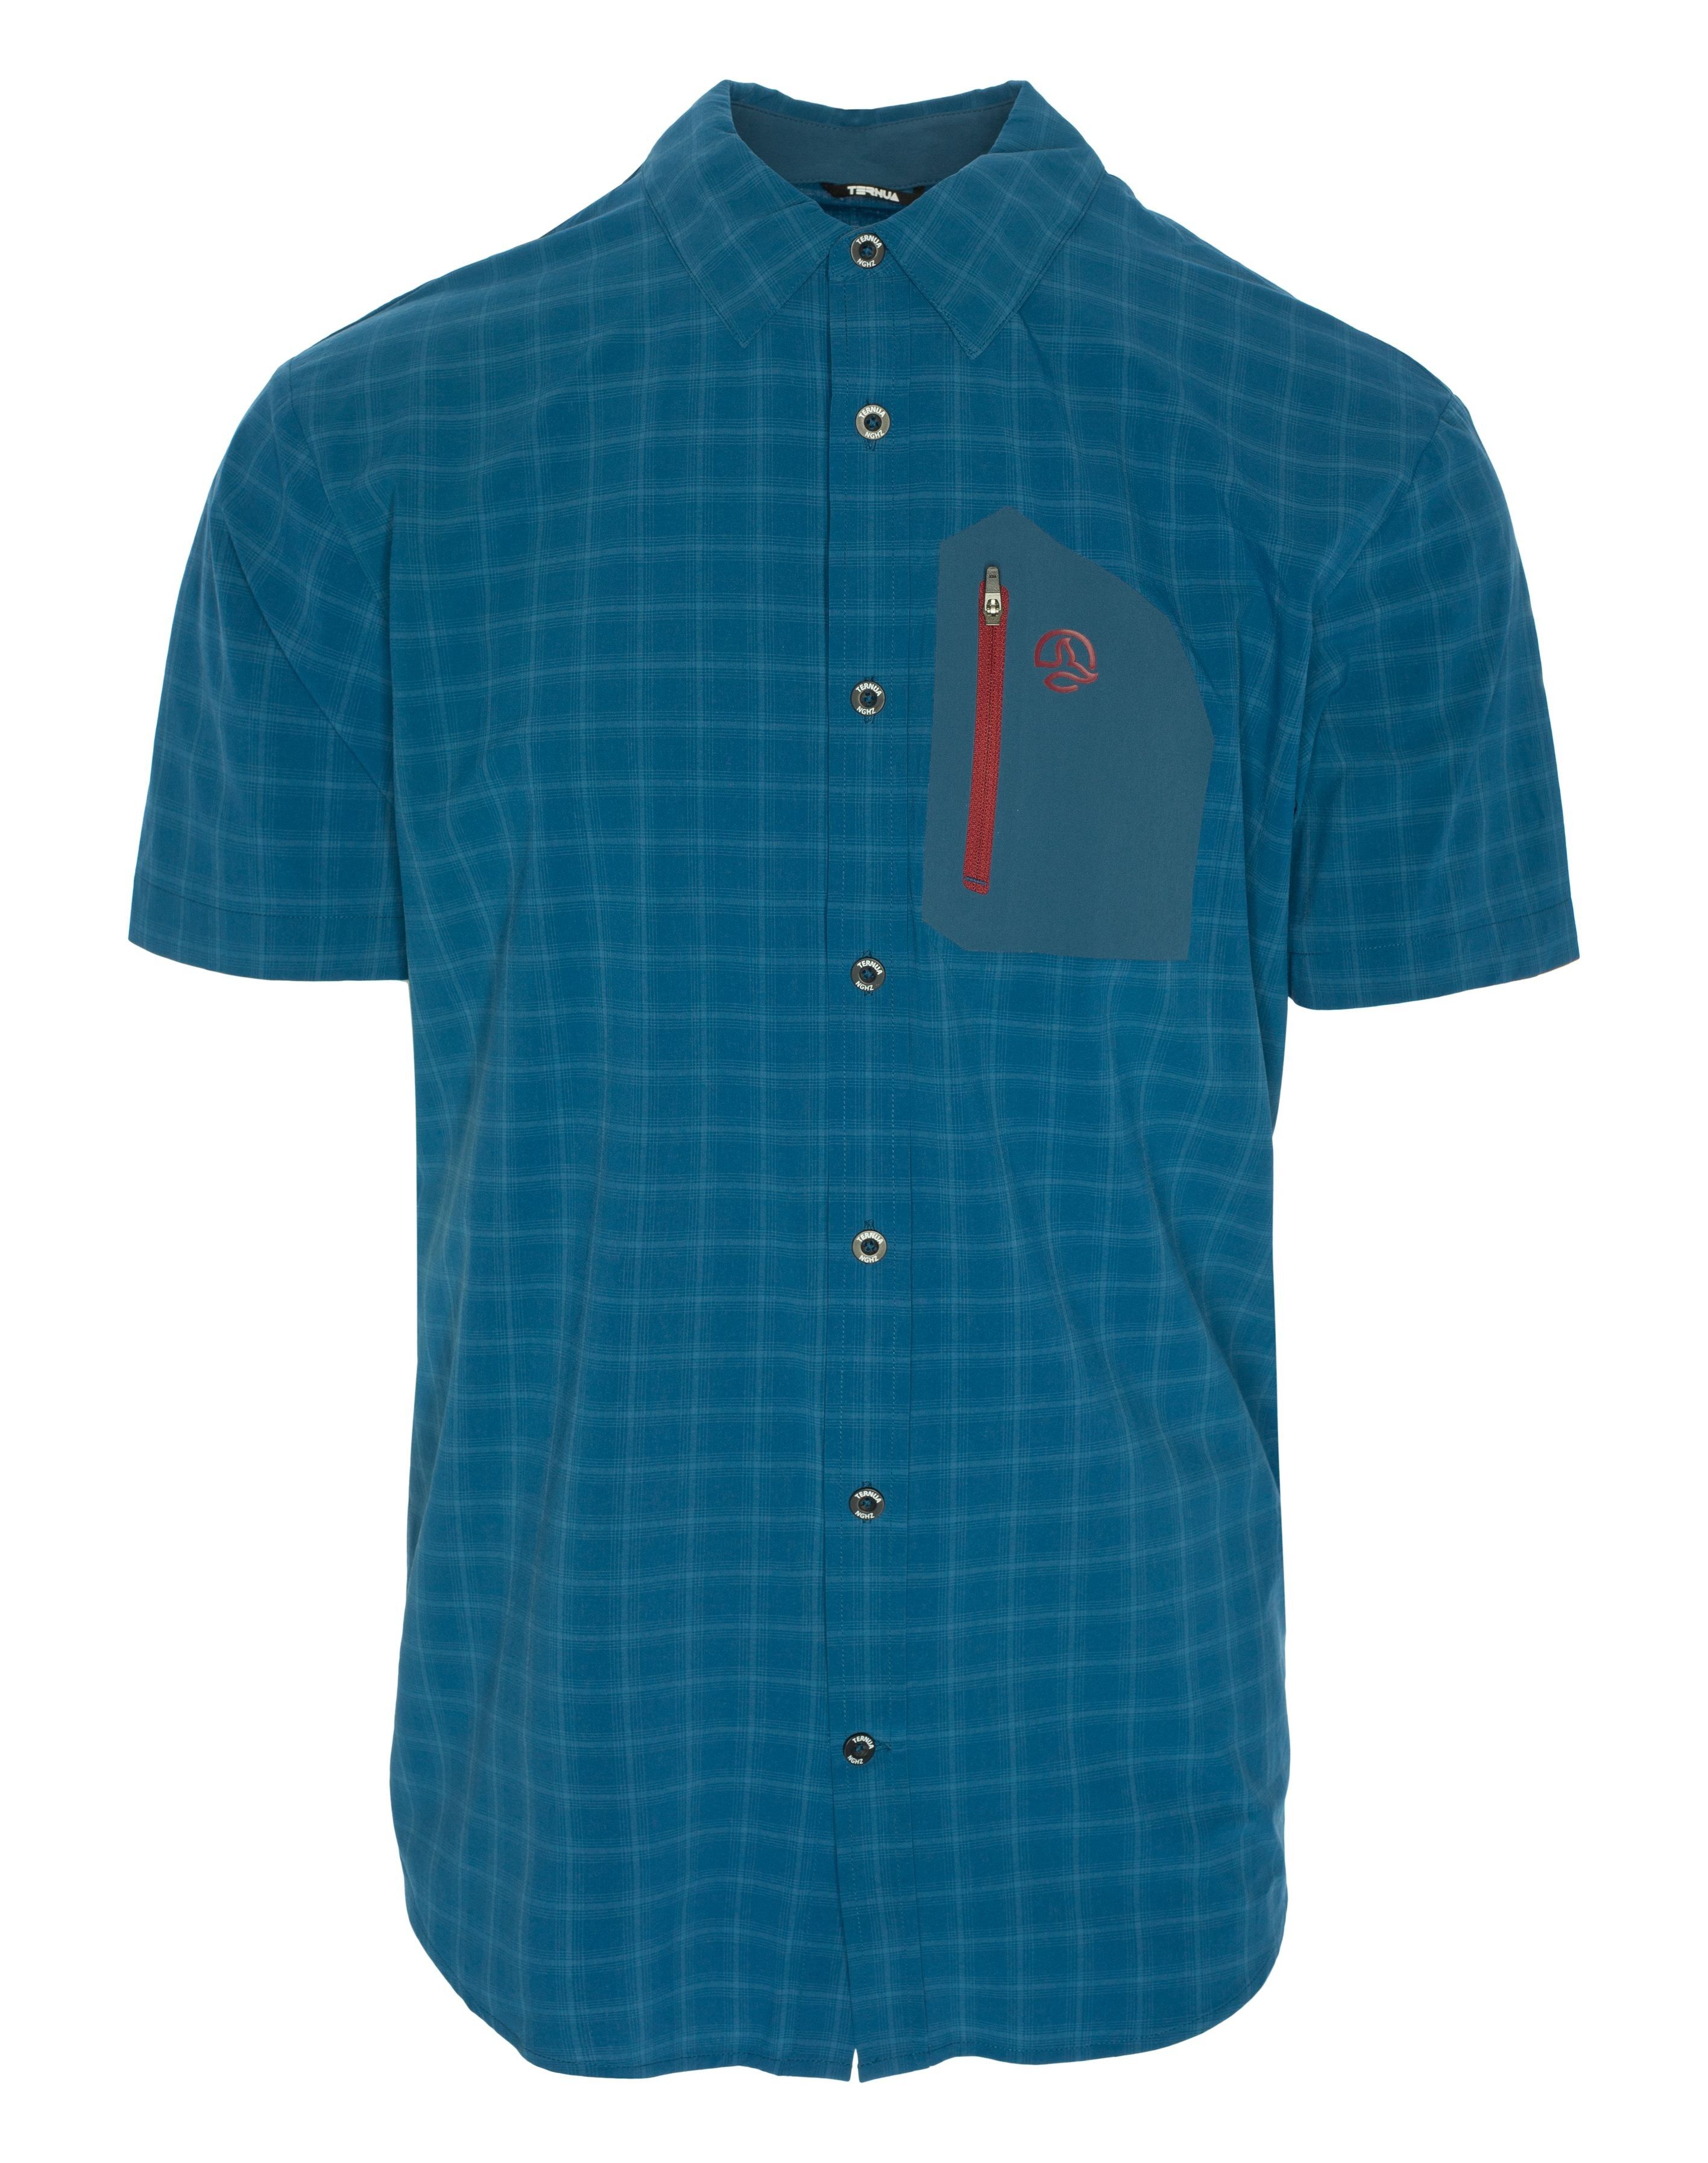 Ternua - Athy Shirt - Camicia - Uomo